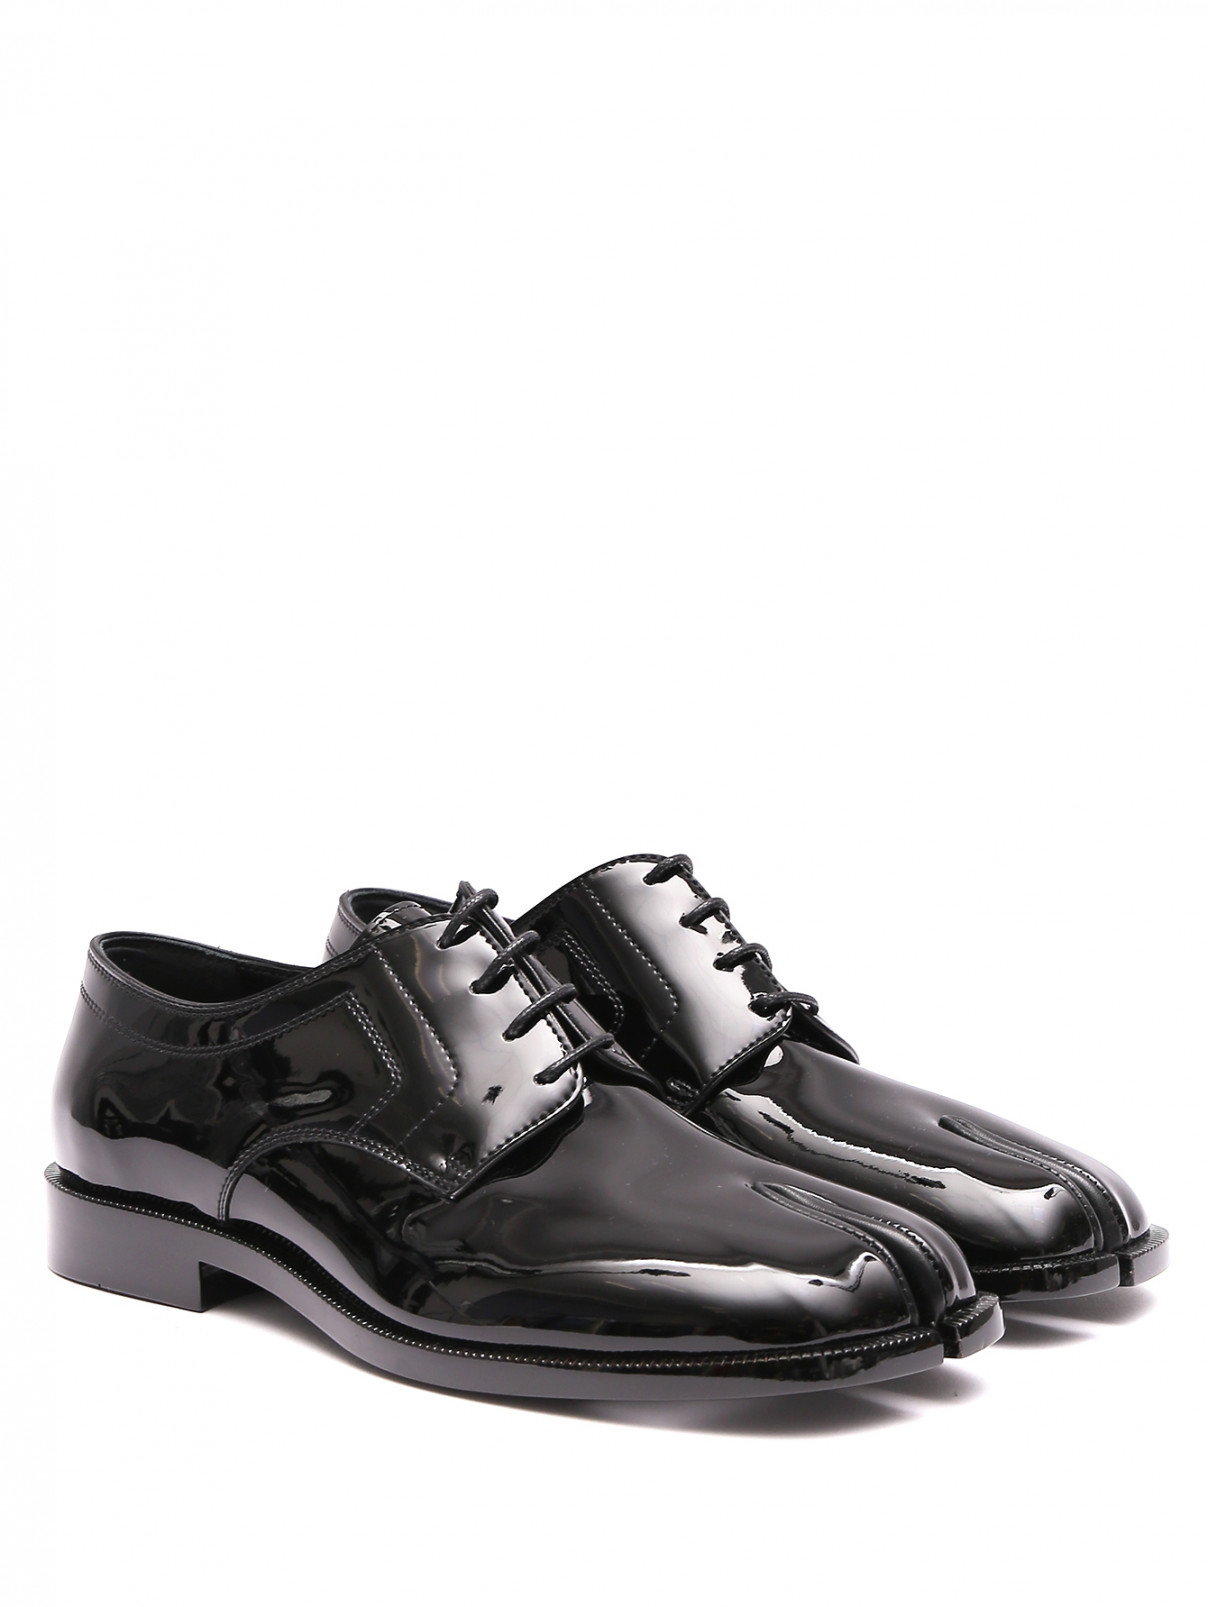 Ботинки Tabi из гладкой кожи на небольшом каблуке Maison Margiela  –  Общий вид  – Цвет:  Черный